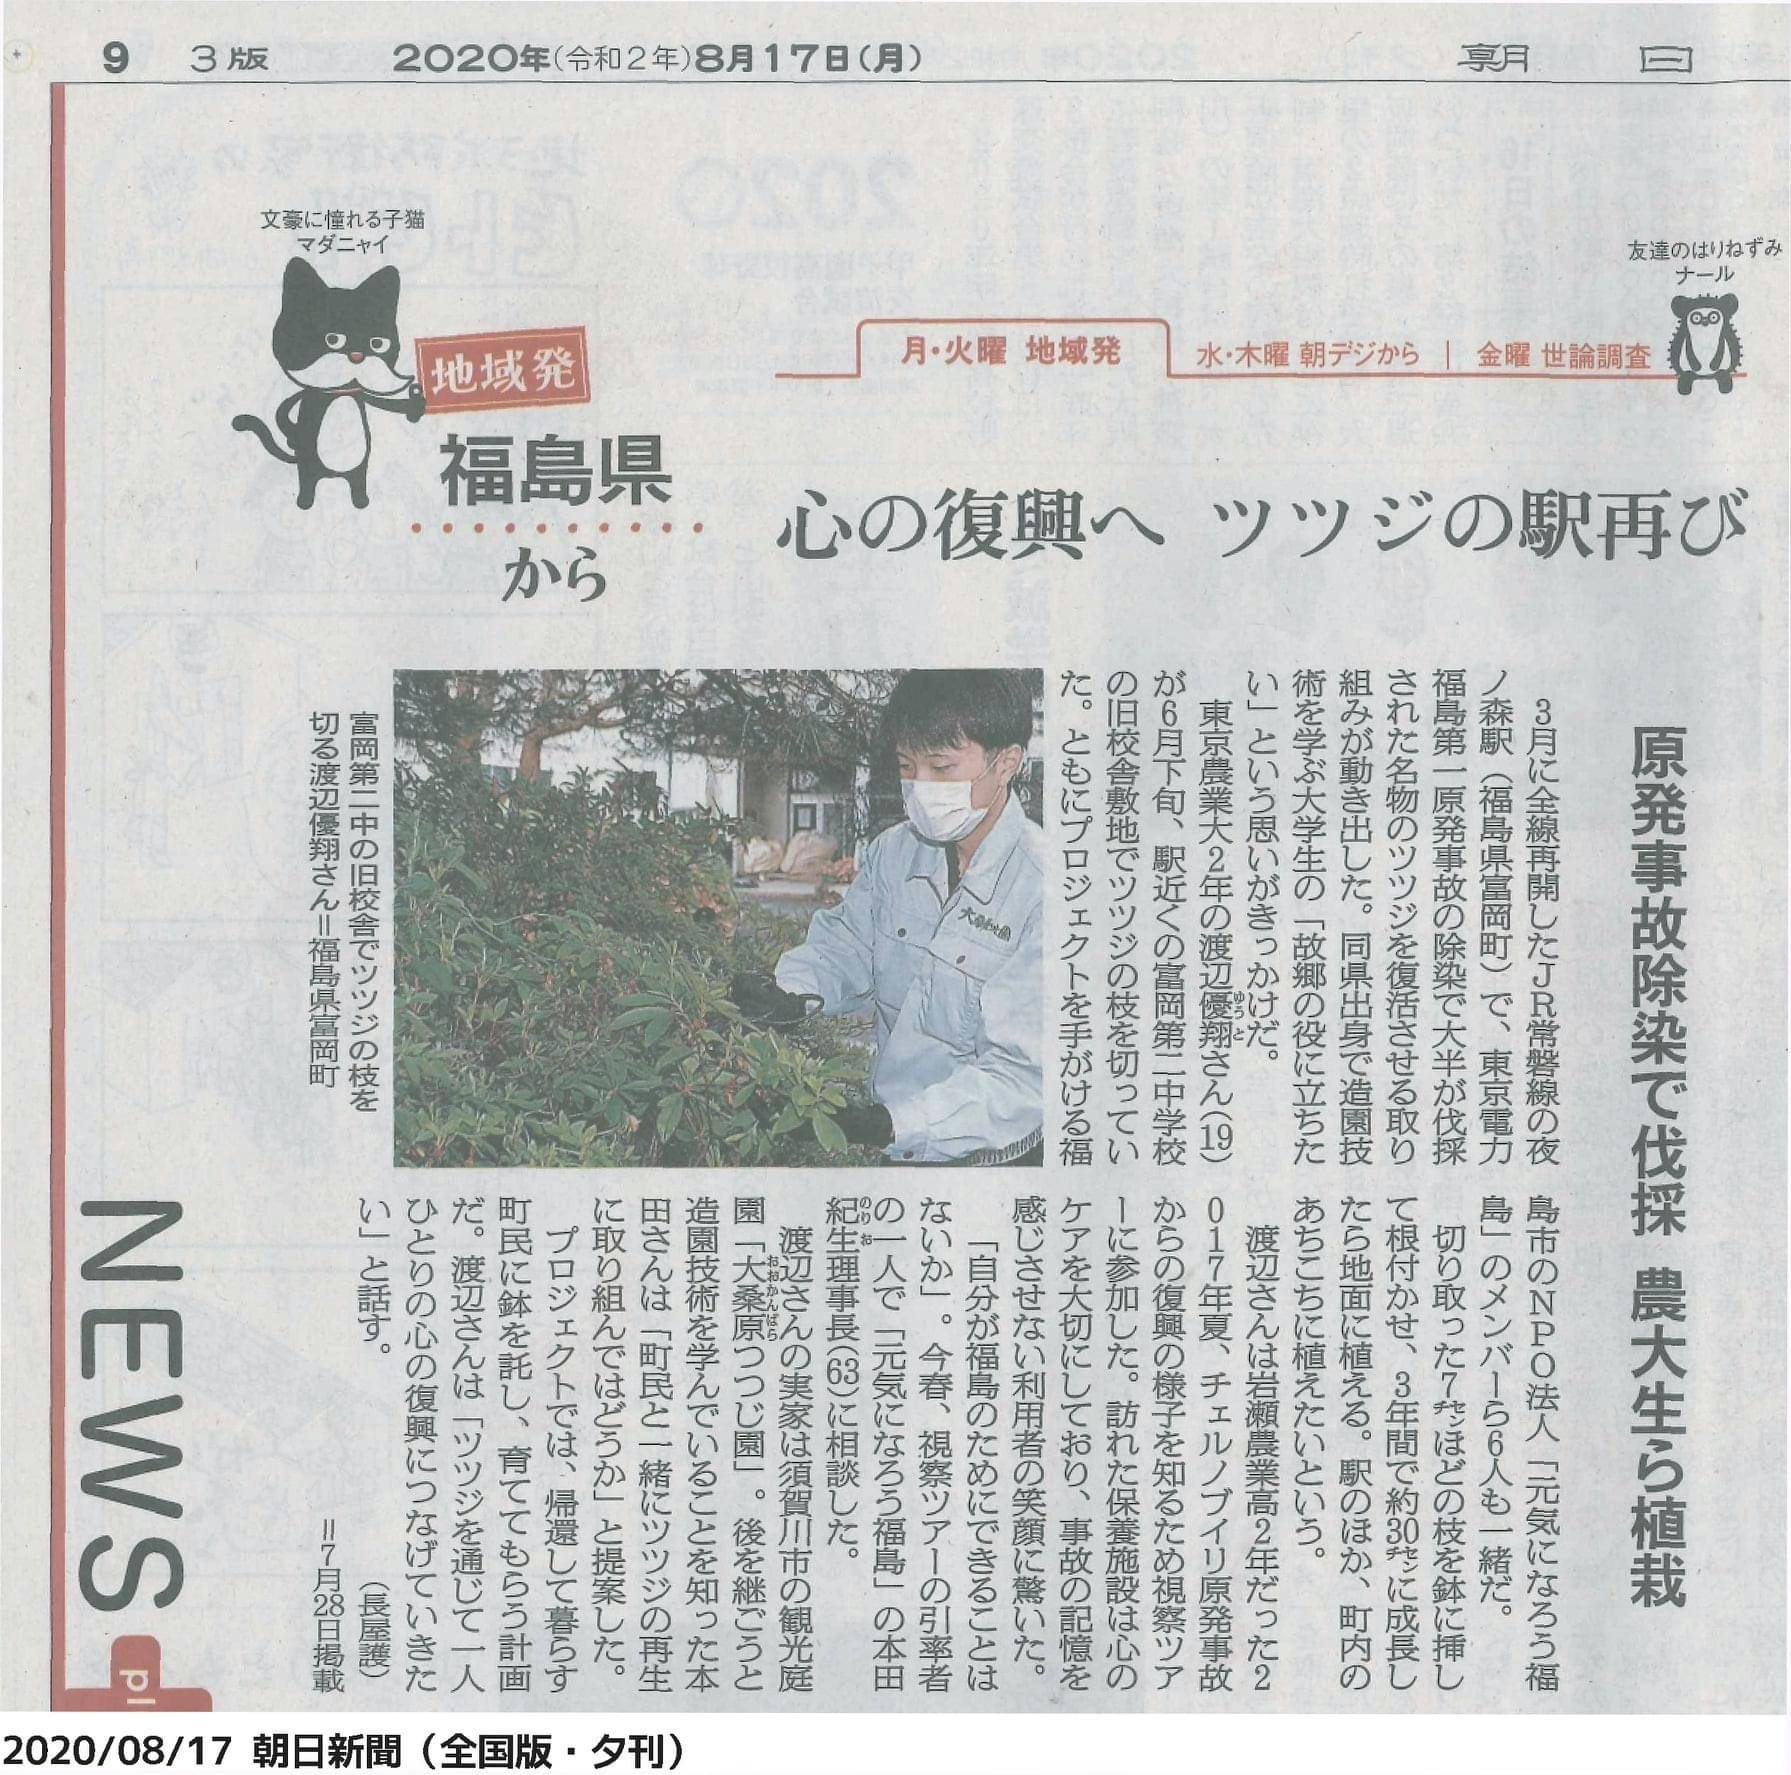 朝日新聞 全国版 に掲載されました Fm福島に8月11 13日に出演しました Campfire キャンプファイヤー